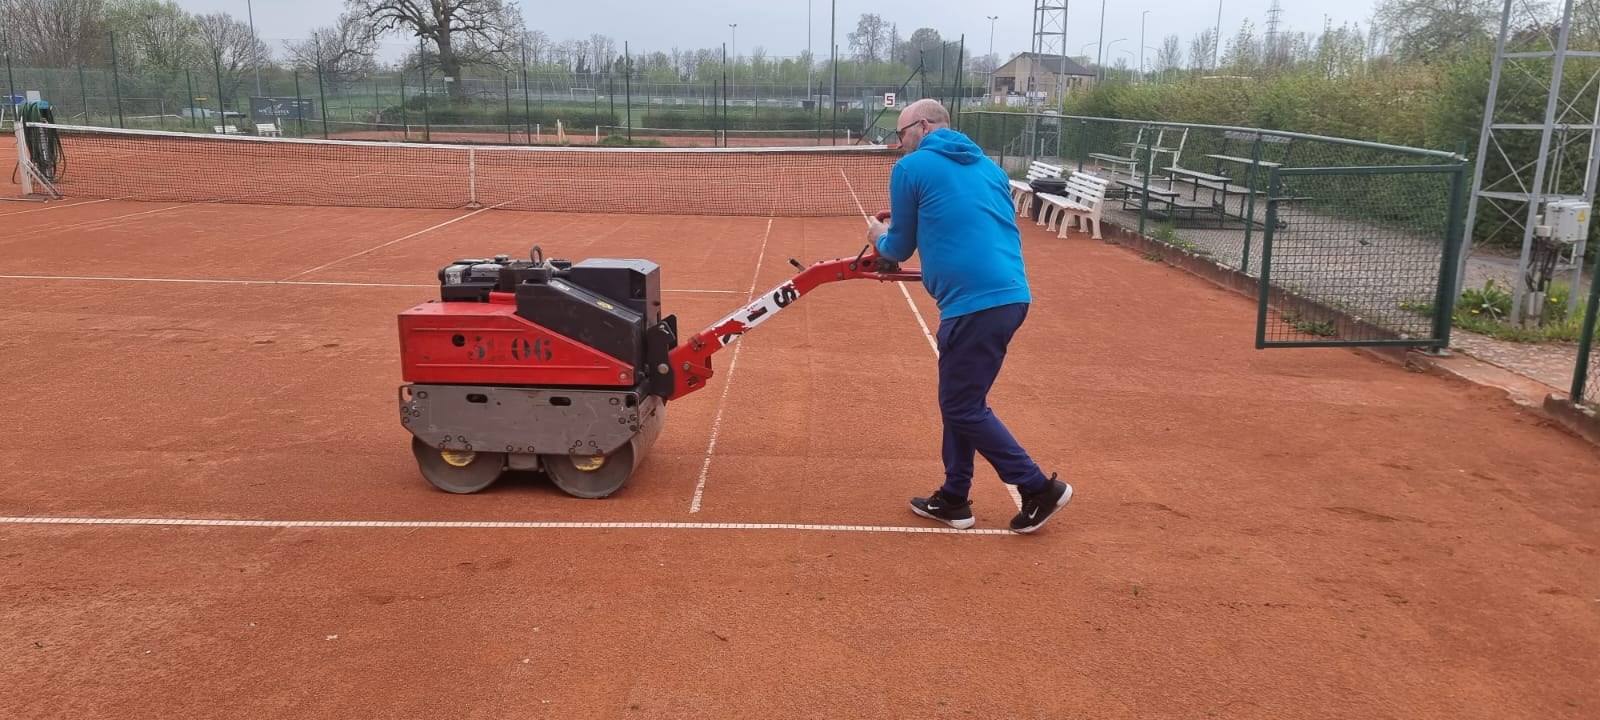 Tennis Enghien - terrains 202304